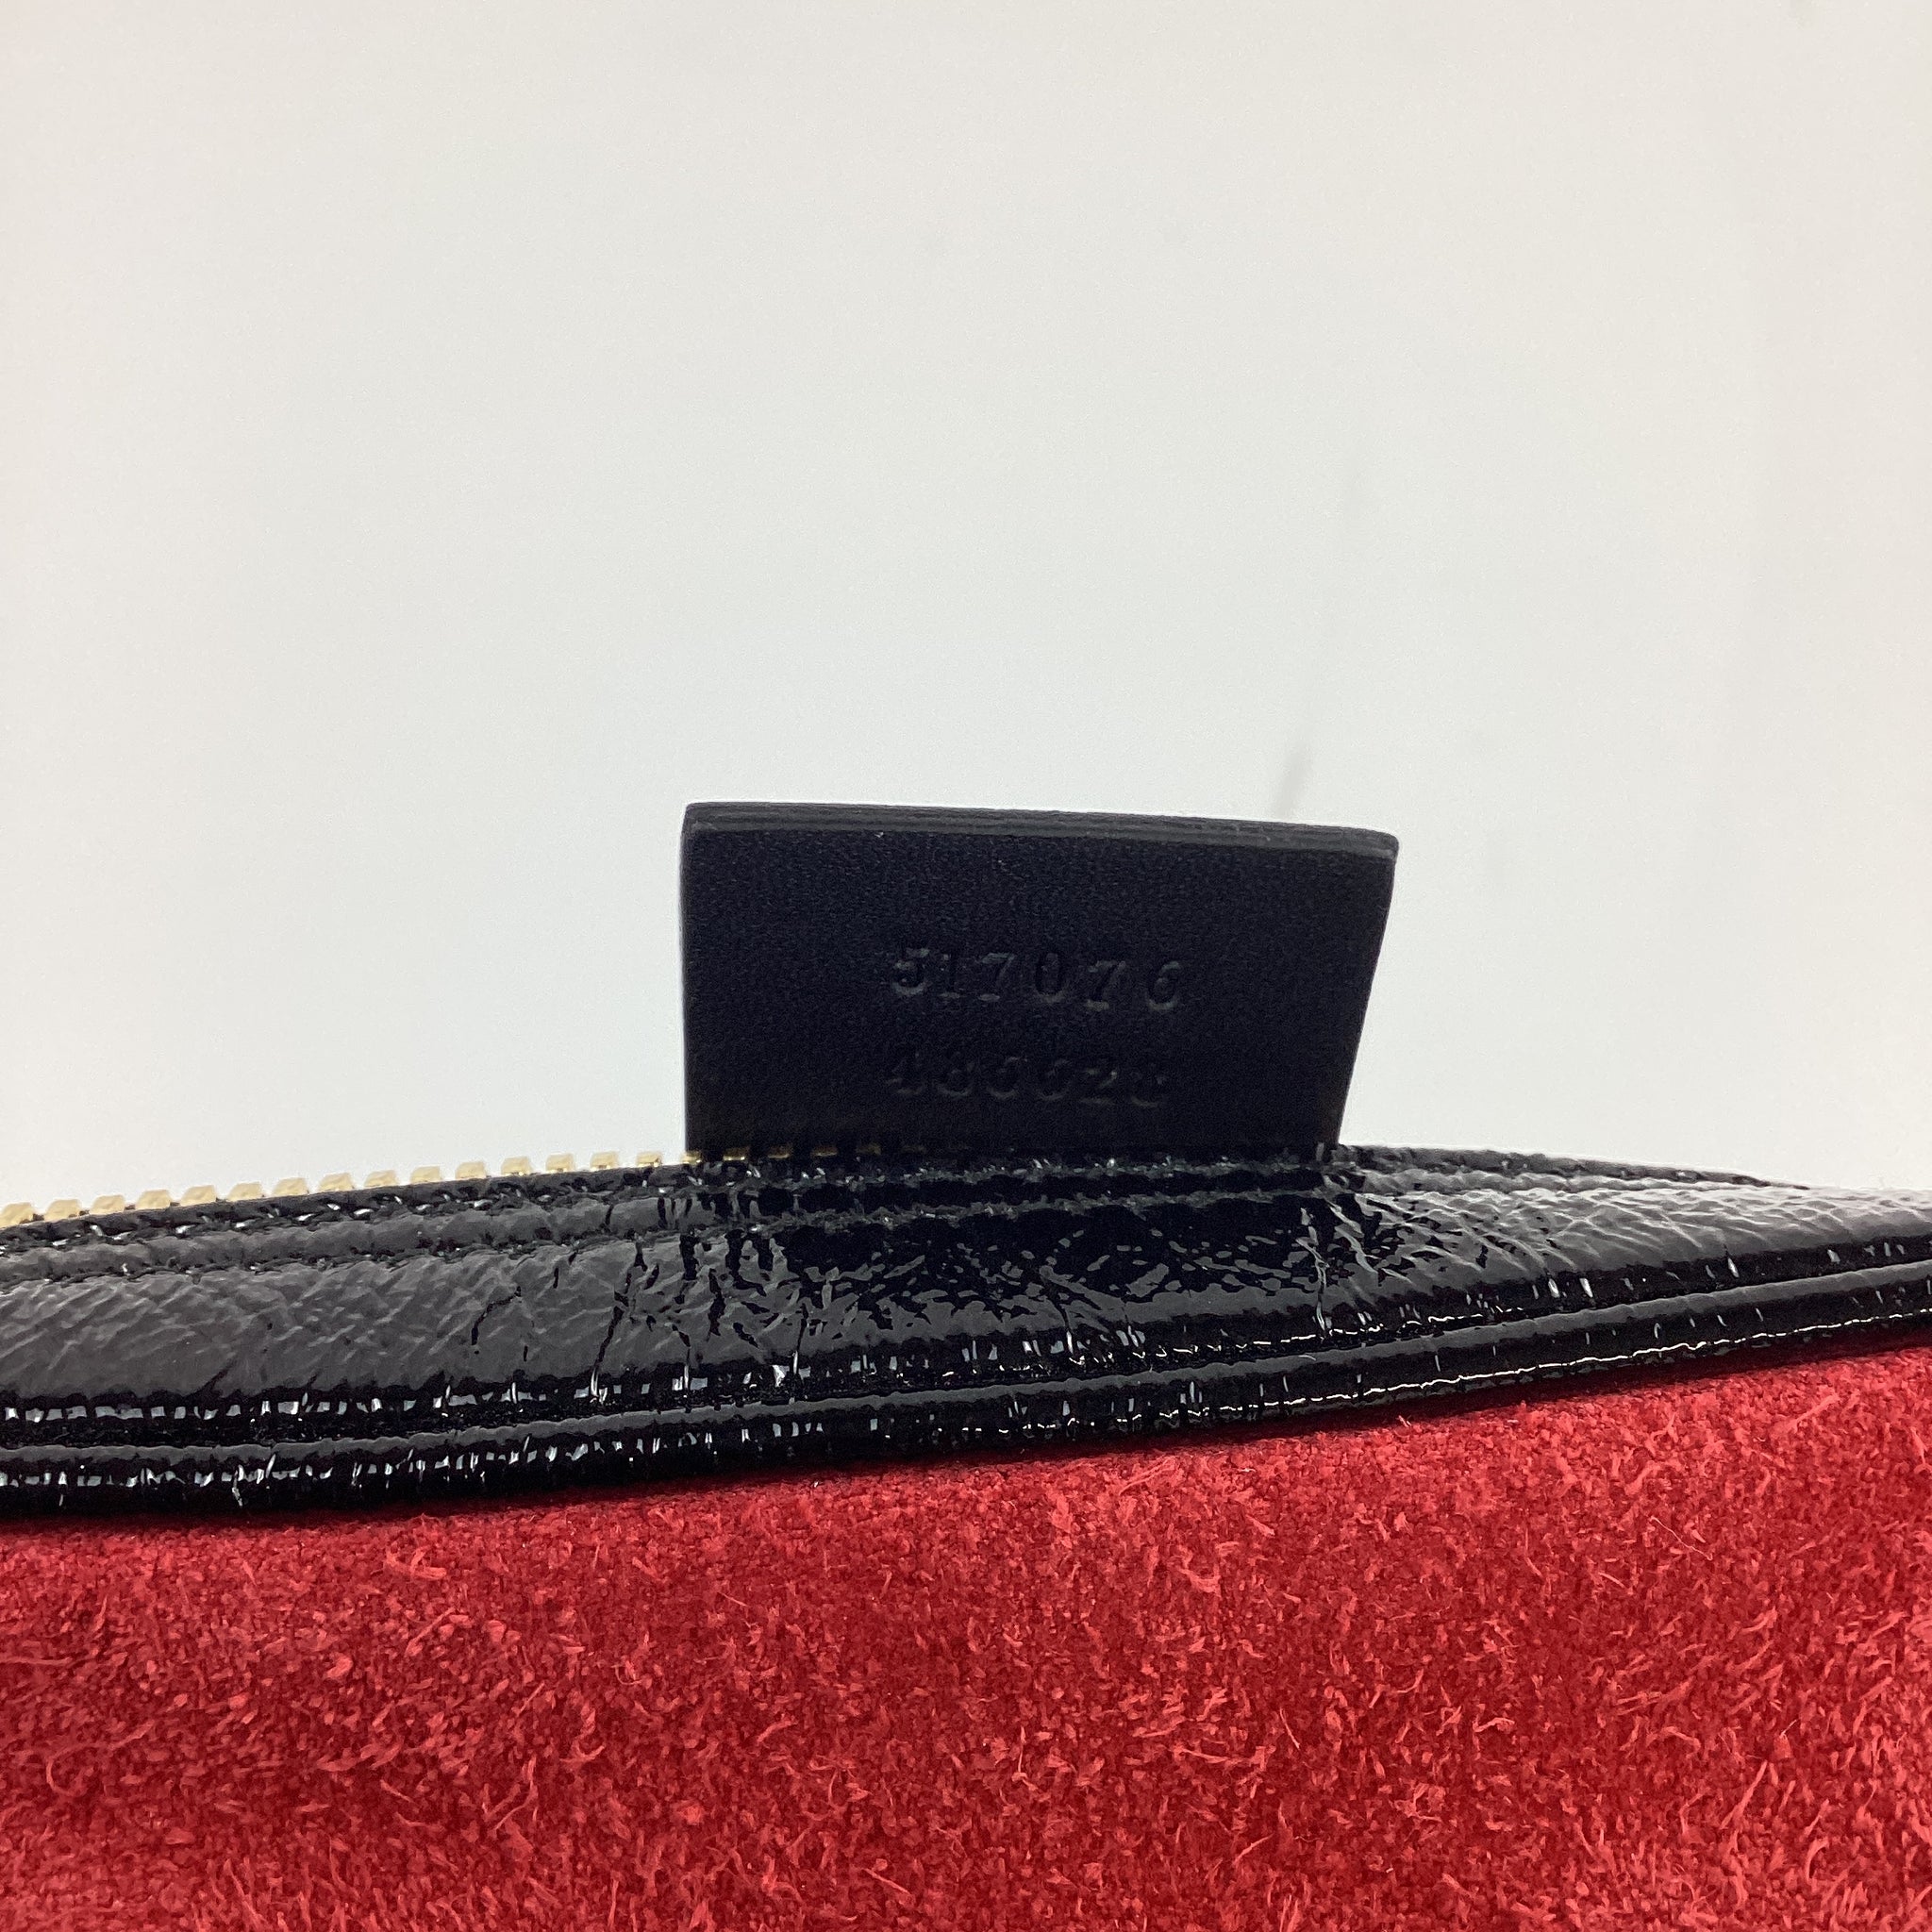 PRELOVED Gucci Ophidia Mini Belt Bag Red Suede WMCWQ3Q 050624 B